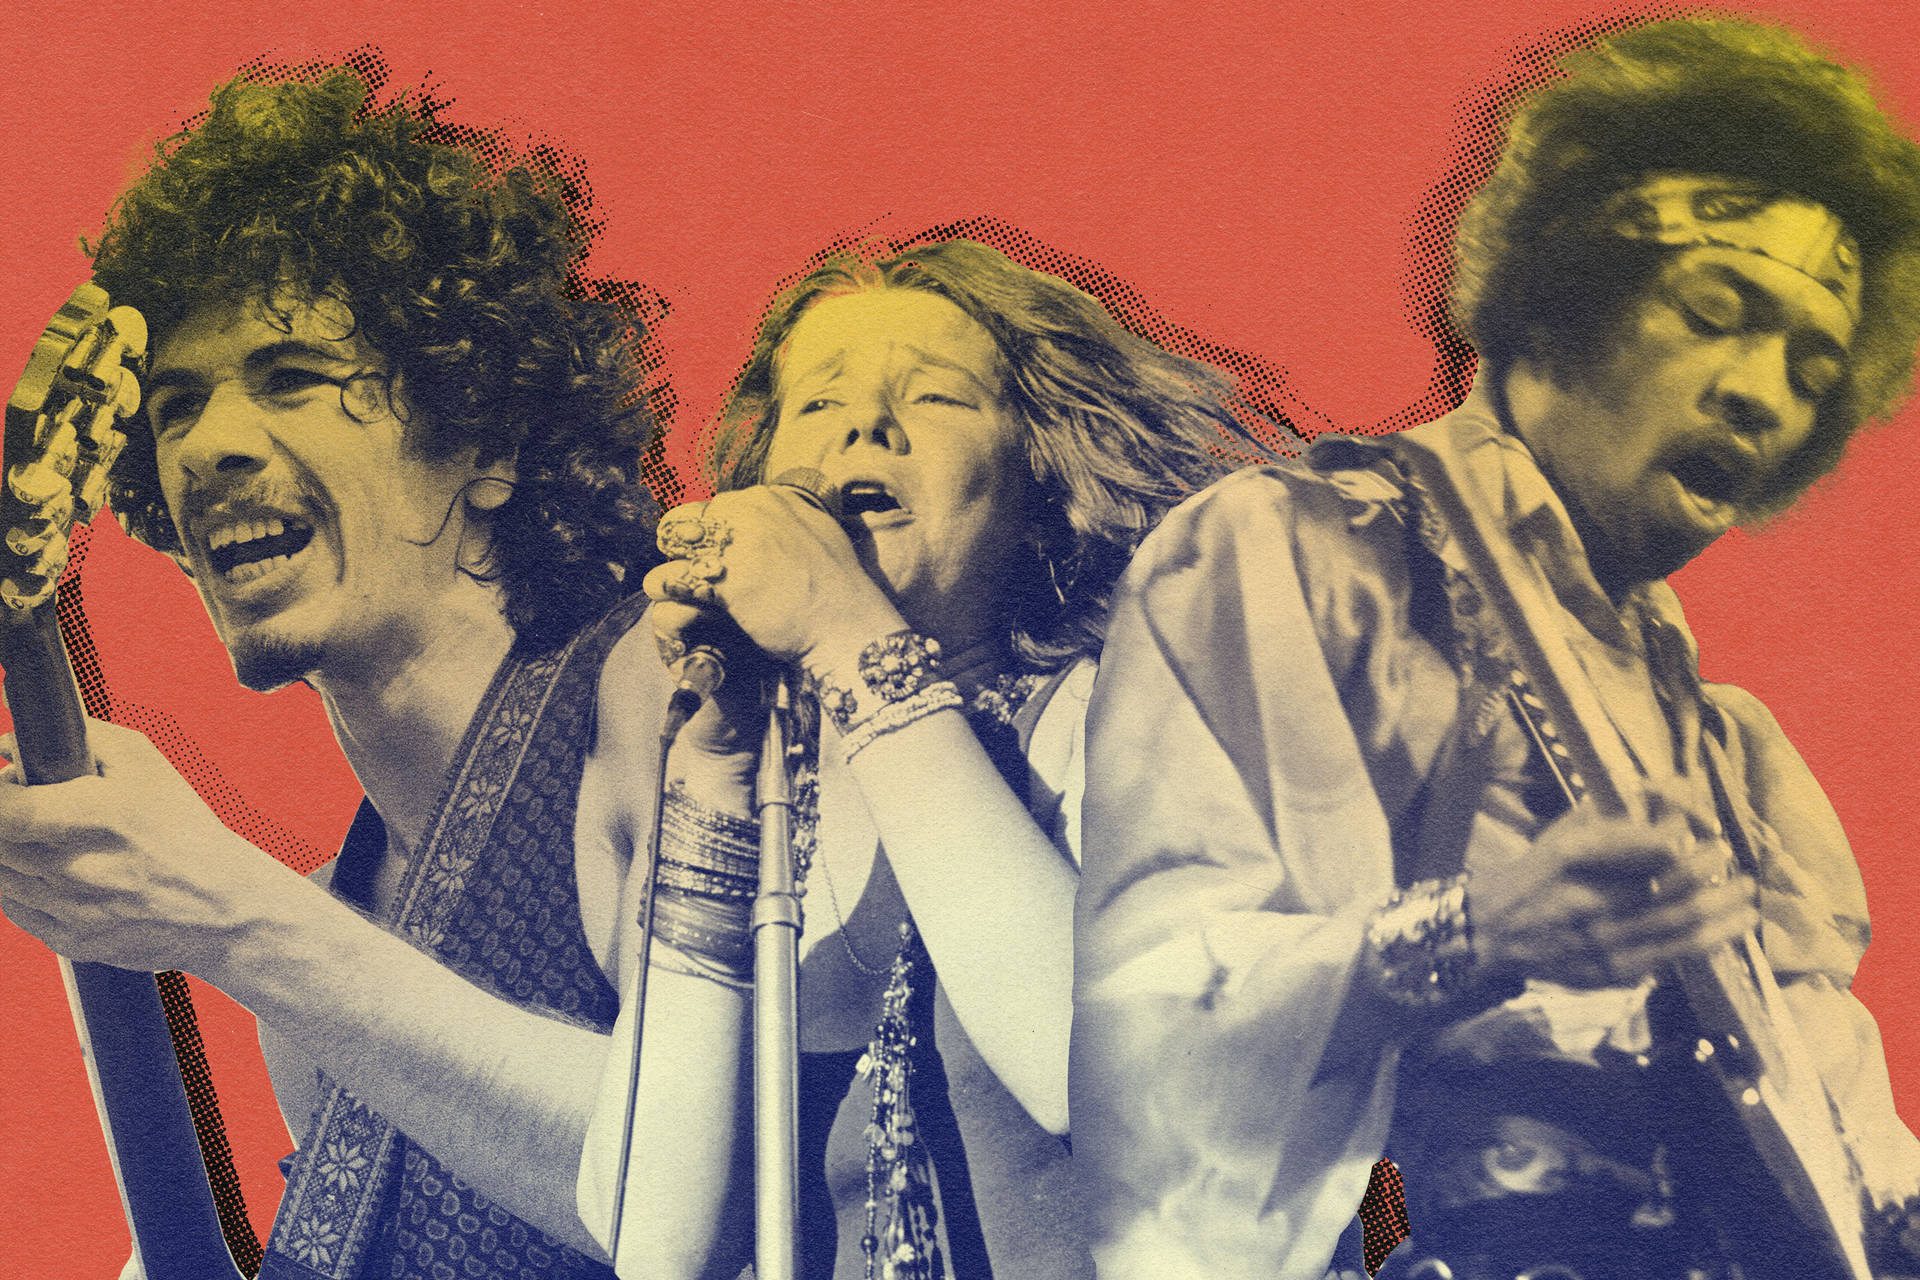 Woodstock Headliners Collage Wallpaper